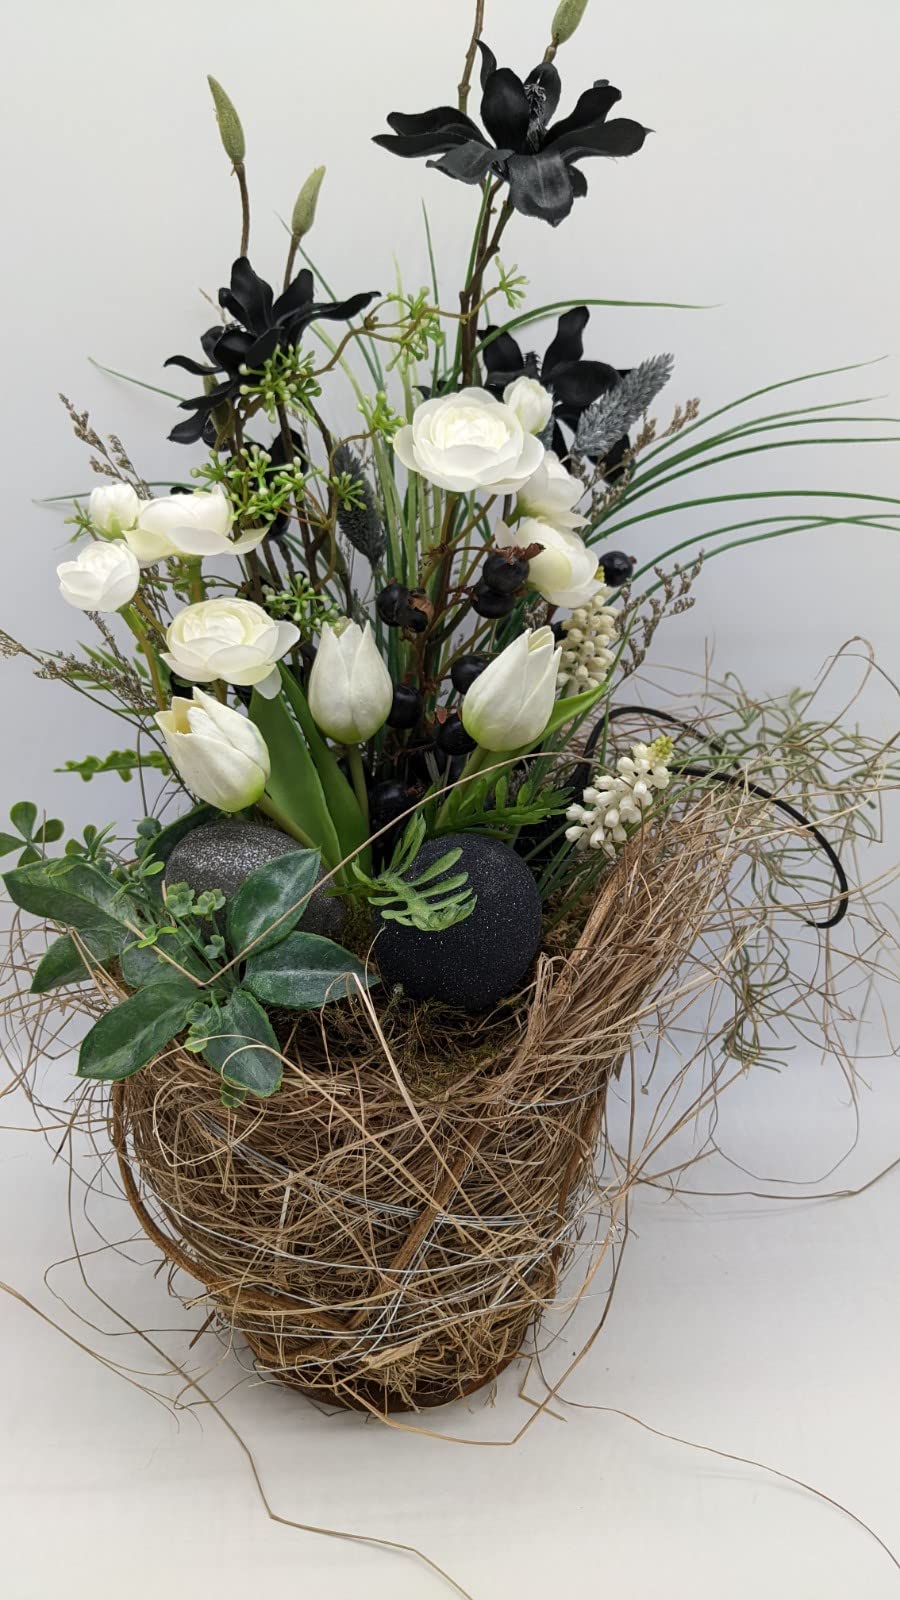 Ostergesteck Frühlingsgesteck Blumenarrangement Magnolien Ranunkeln Eier schwarz weiß